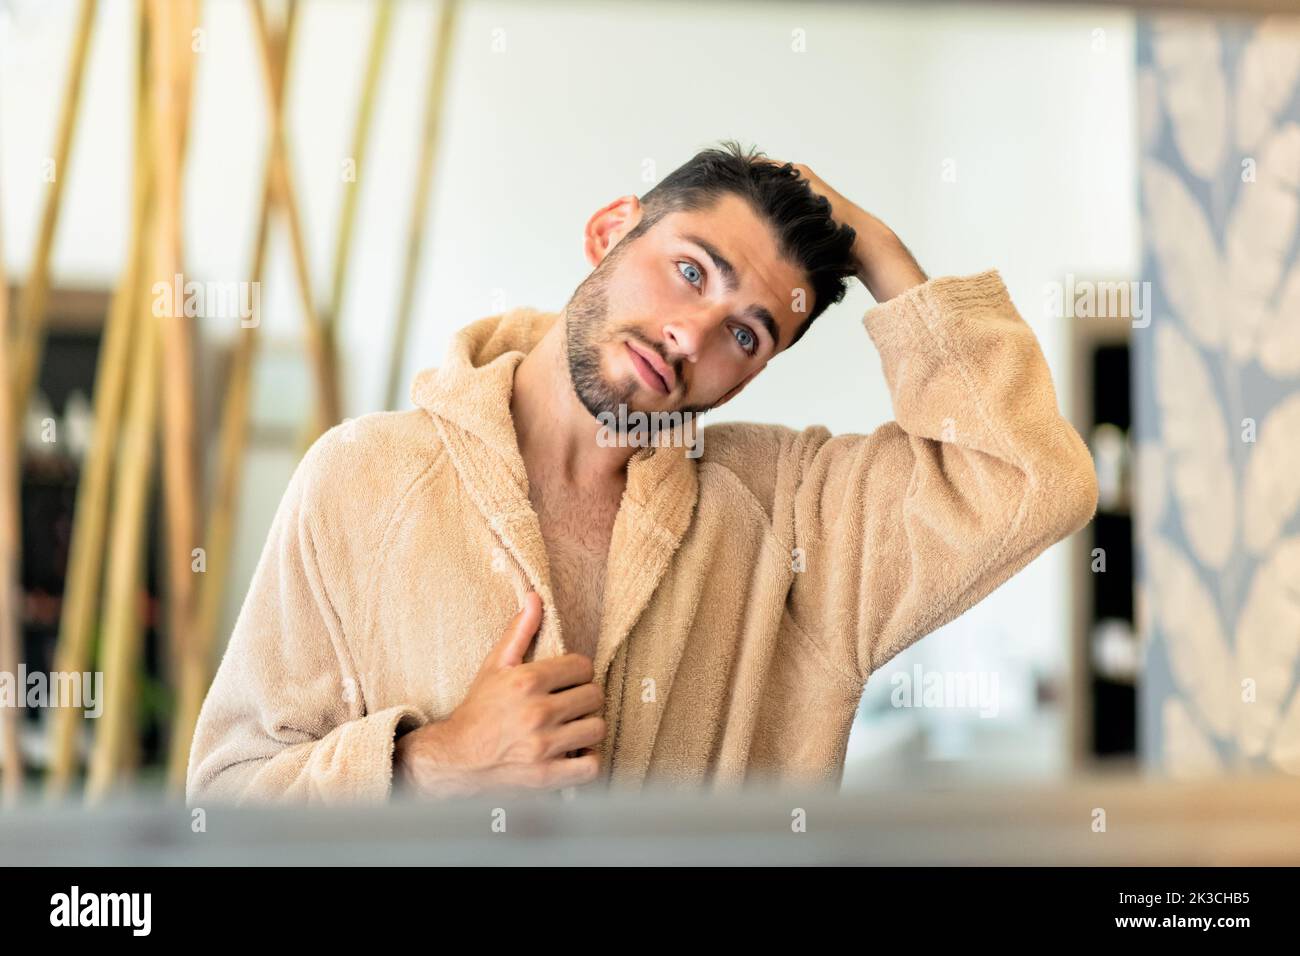 Riflesso del giovane maschio in morbido accappatoio che tocca i capelli scuri e che guarda nello specchio durante la sessione termale in salone Foto Stock